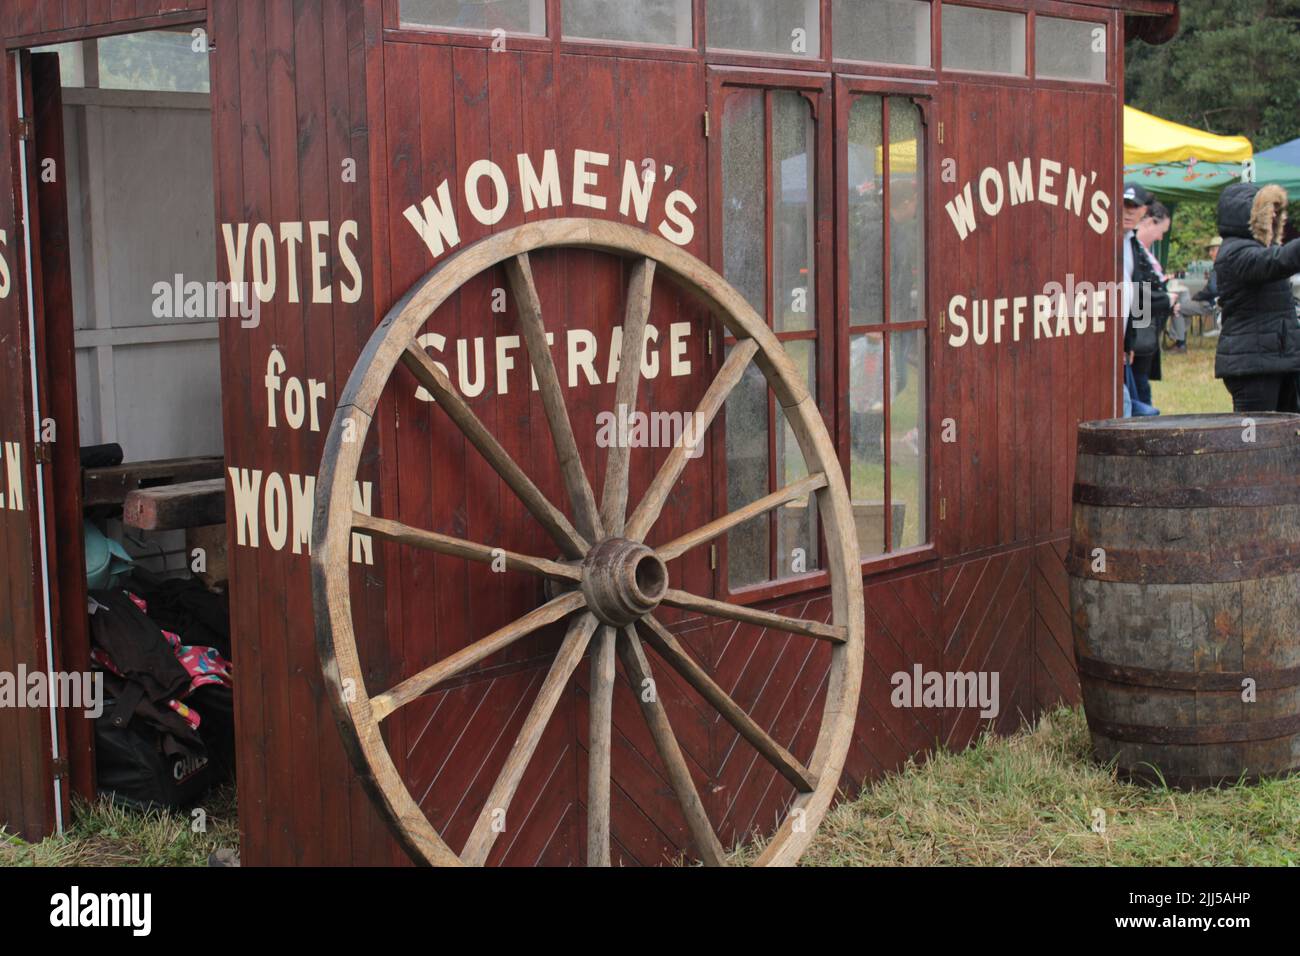 Le suffrage des femmes et vote pour les femmes peintes en blanc sur un vieux wagon en bois. Upholland Green Fayre, Lancashire, Angleterre 23-07-2022. Banque D'Images